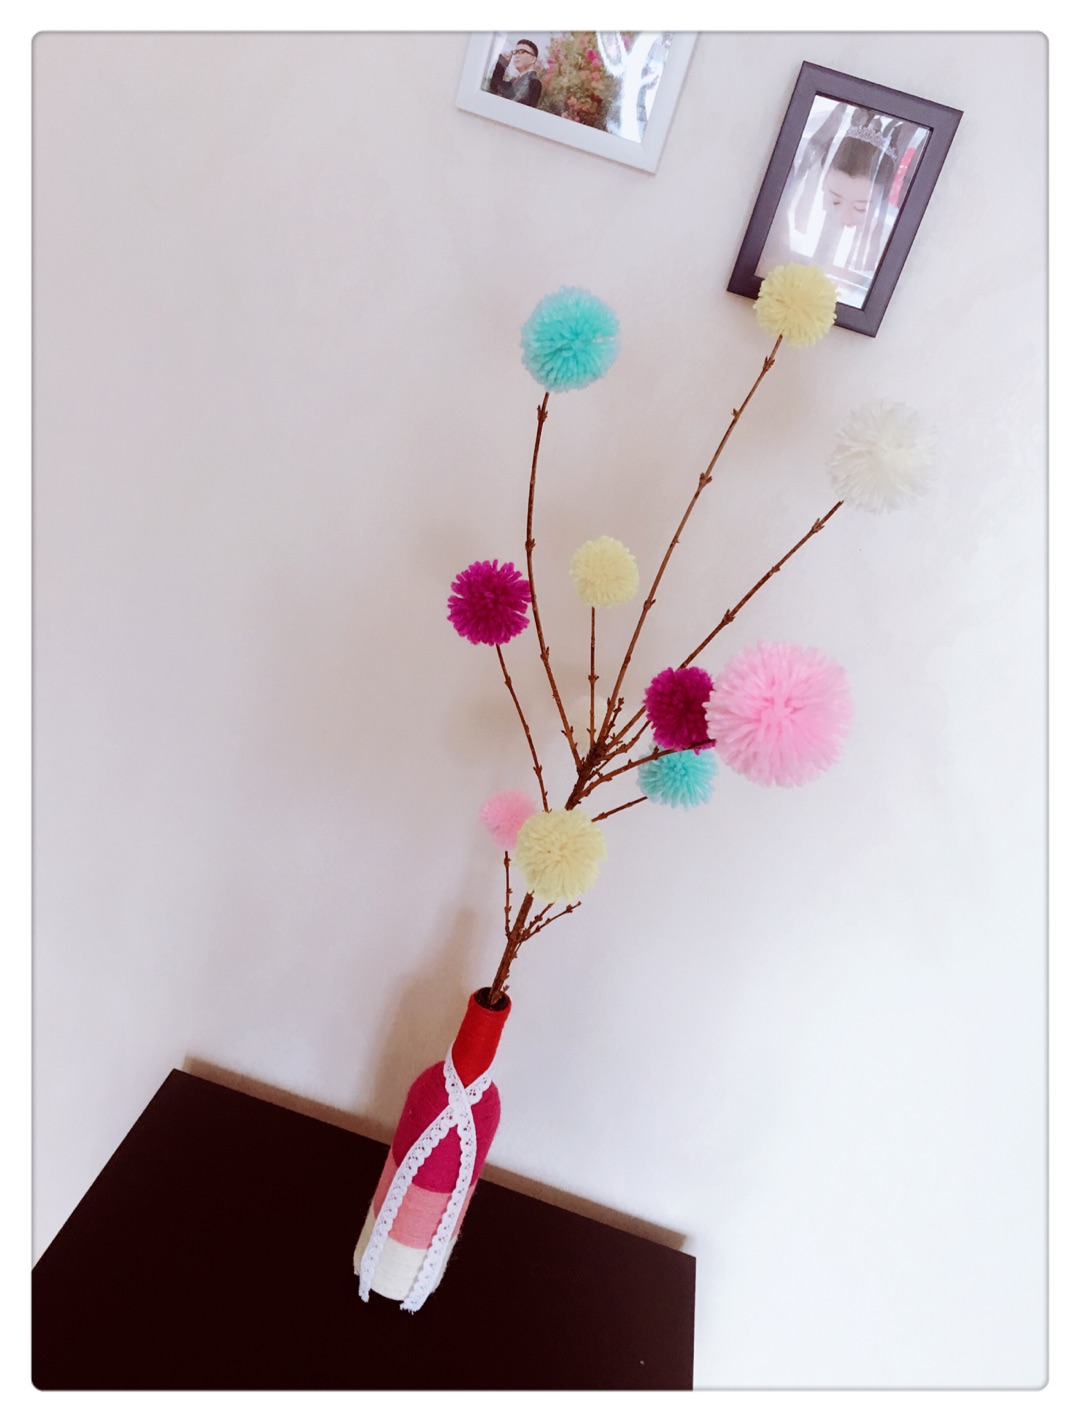 出去玩随意捡的枯枝，回来配上做的毛线球球，放到花瓶里是个不错的装饰哦。